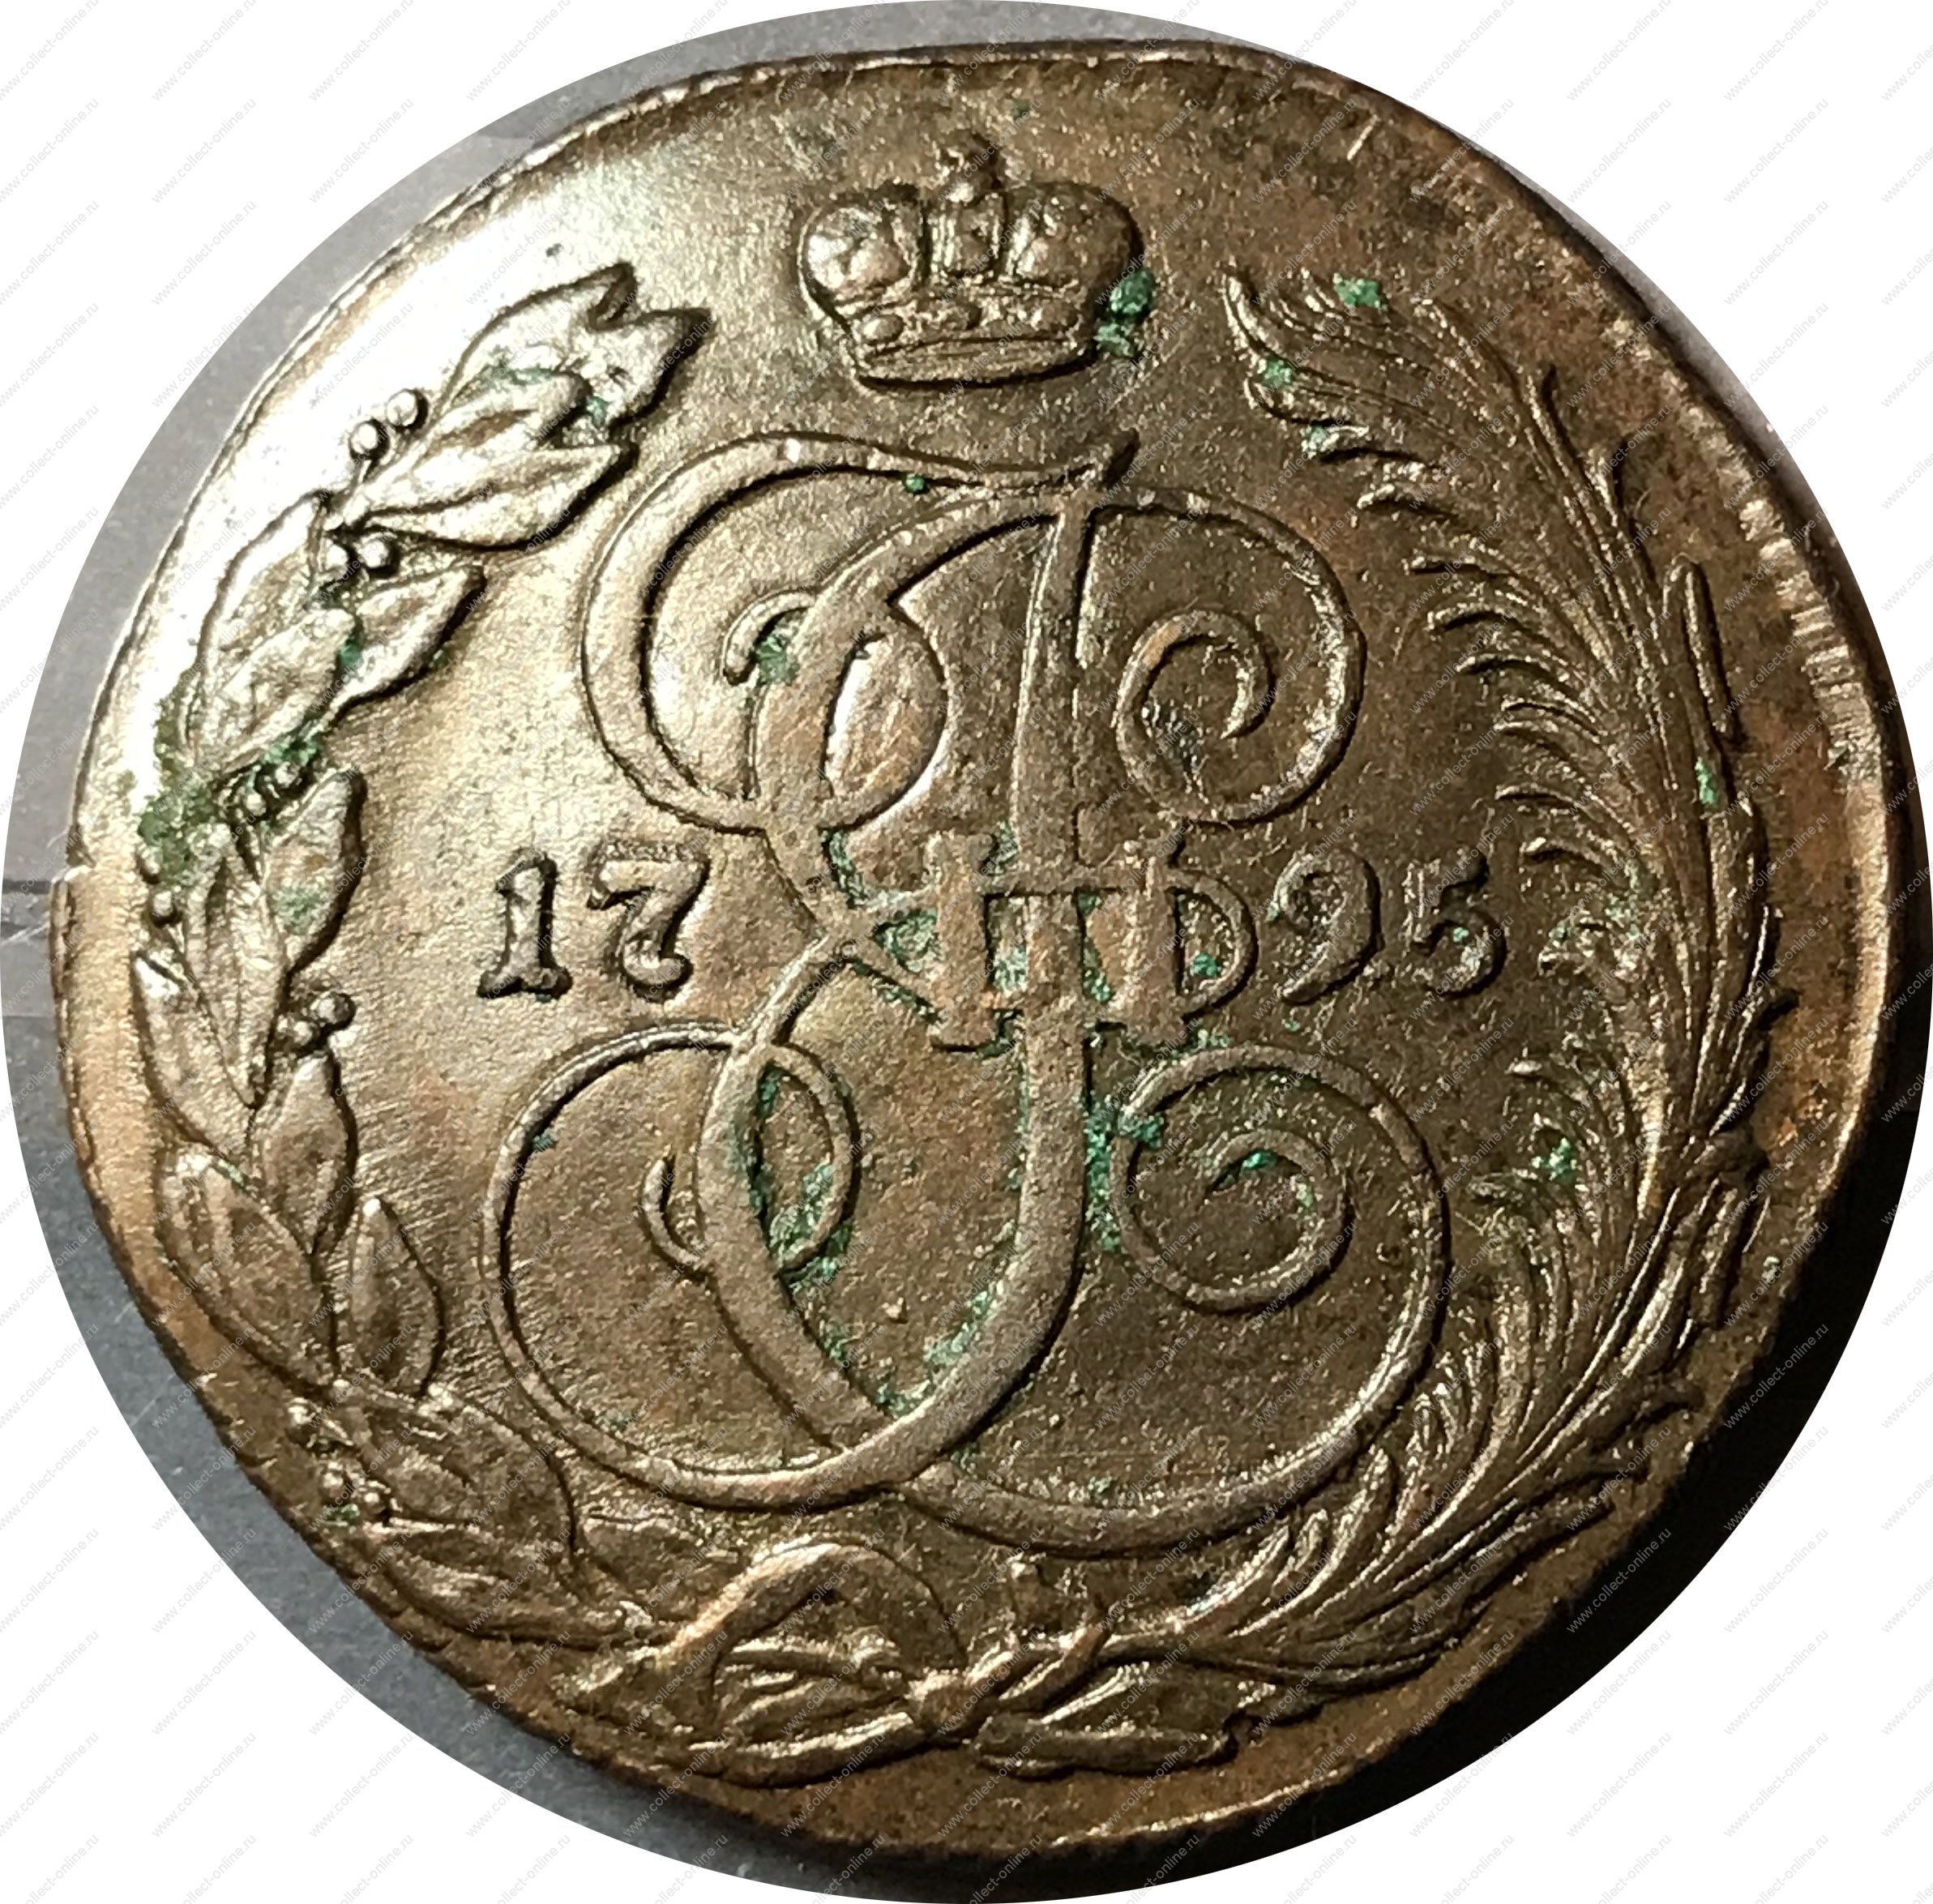 1795 г россия. Царские монеты Екатерины 2 1795г. Медные монеты с вензелем Екатерины 2. Медный пятак Екатерины 2 вес.